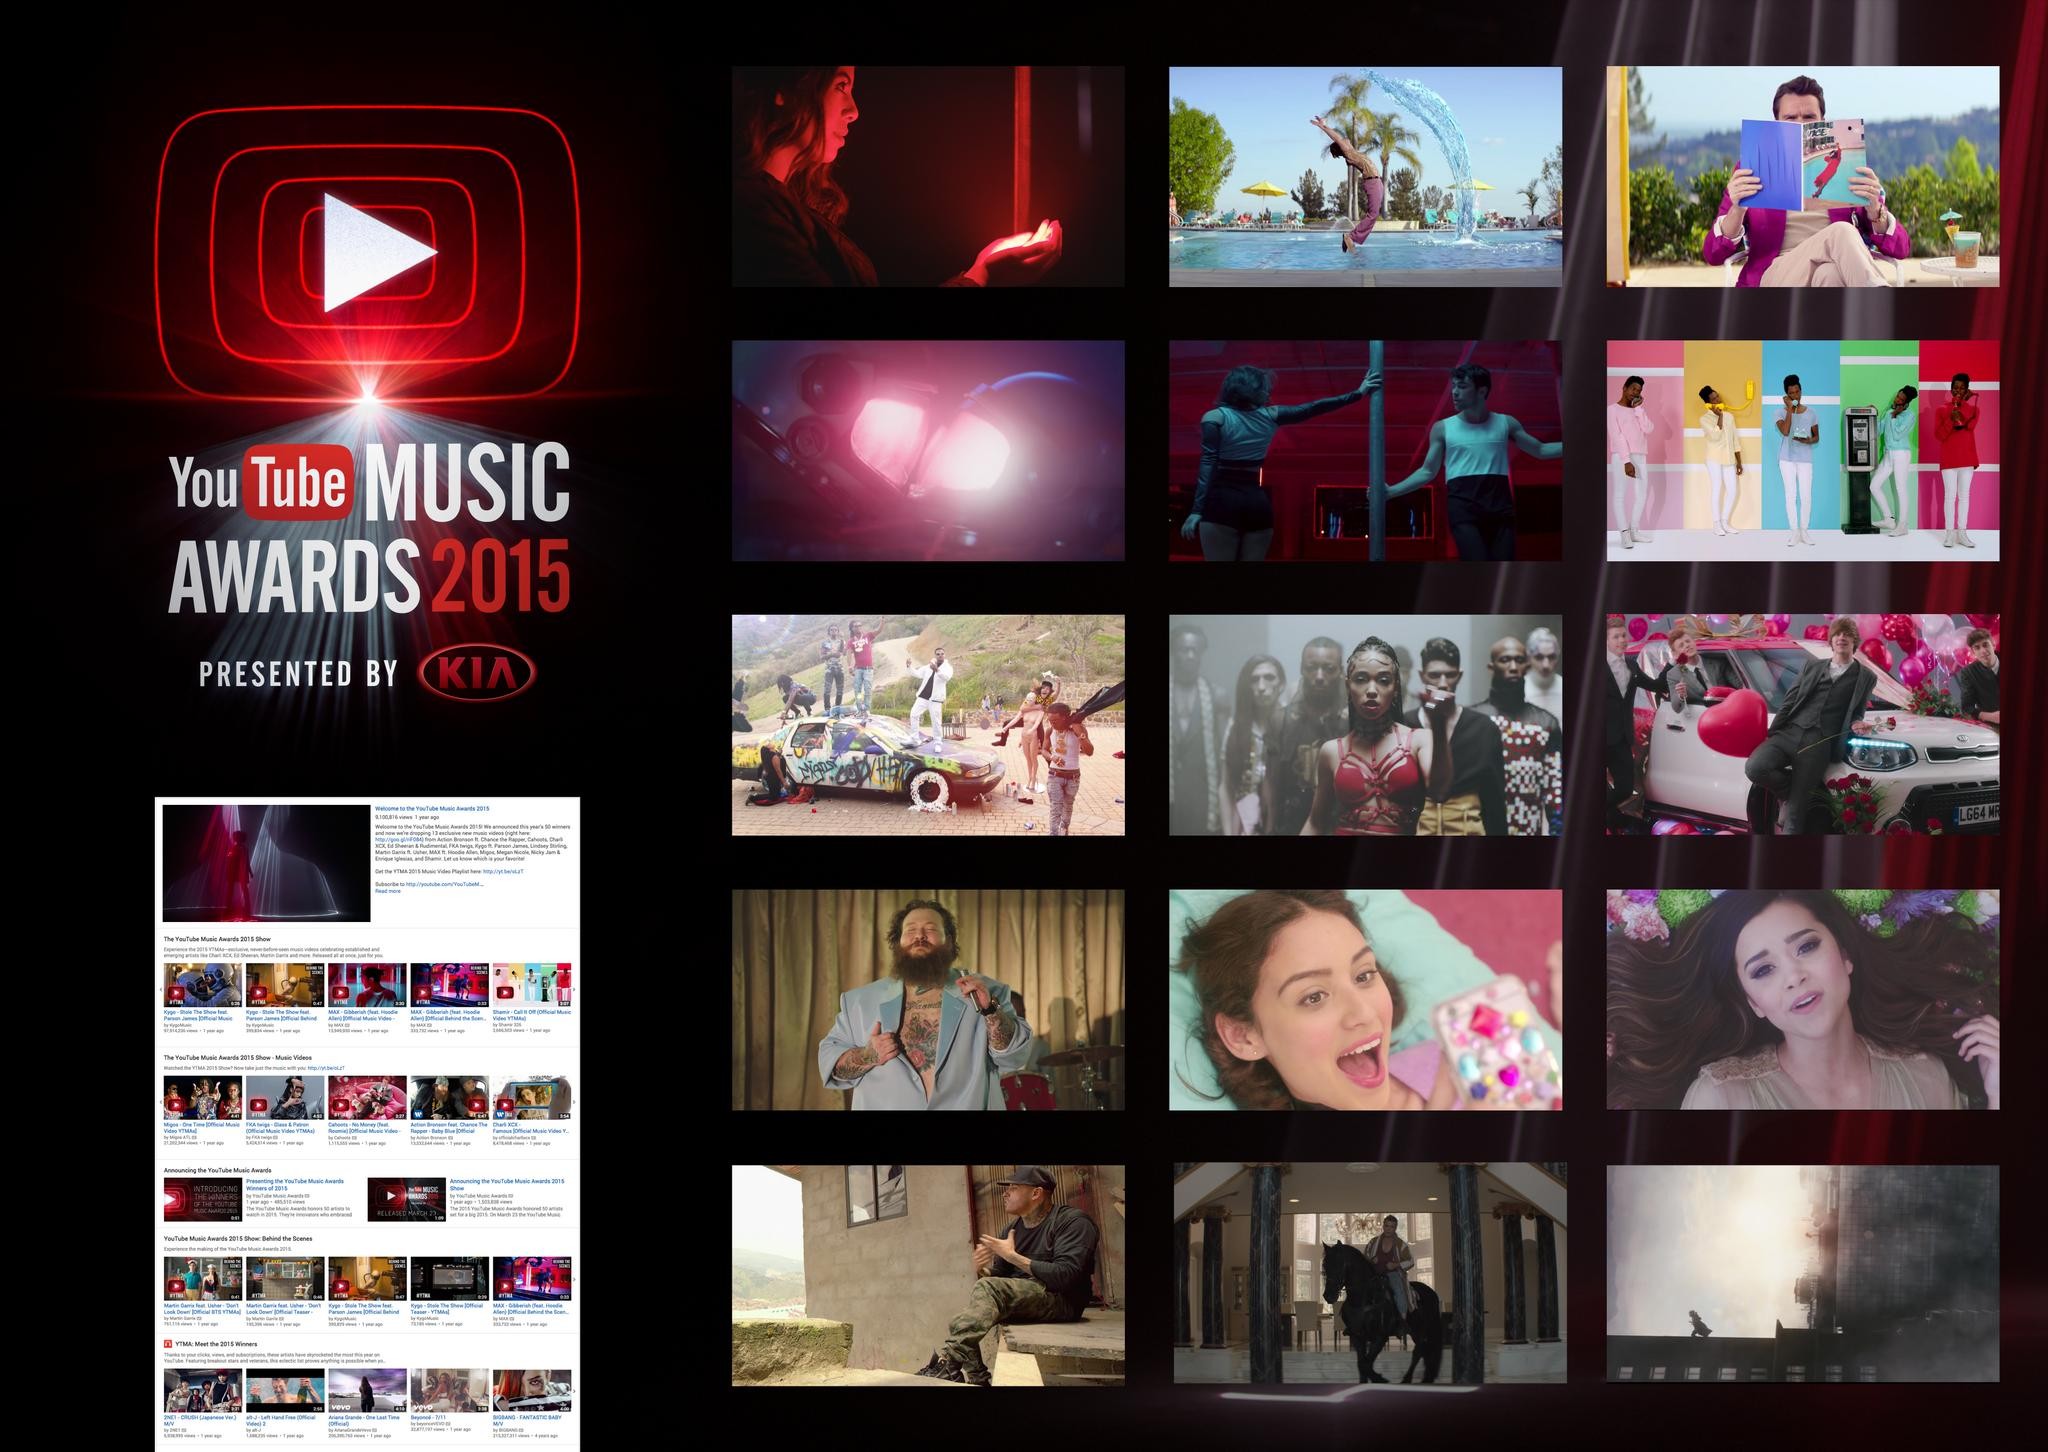 YouTube Music Awards 2015